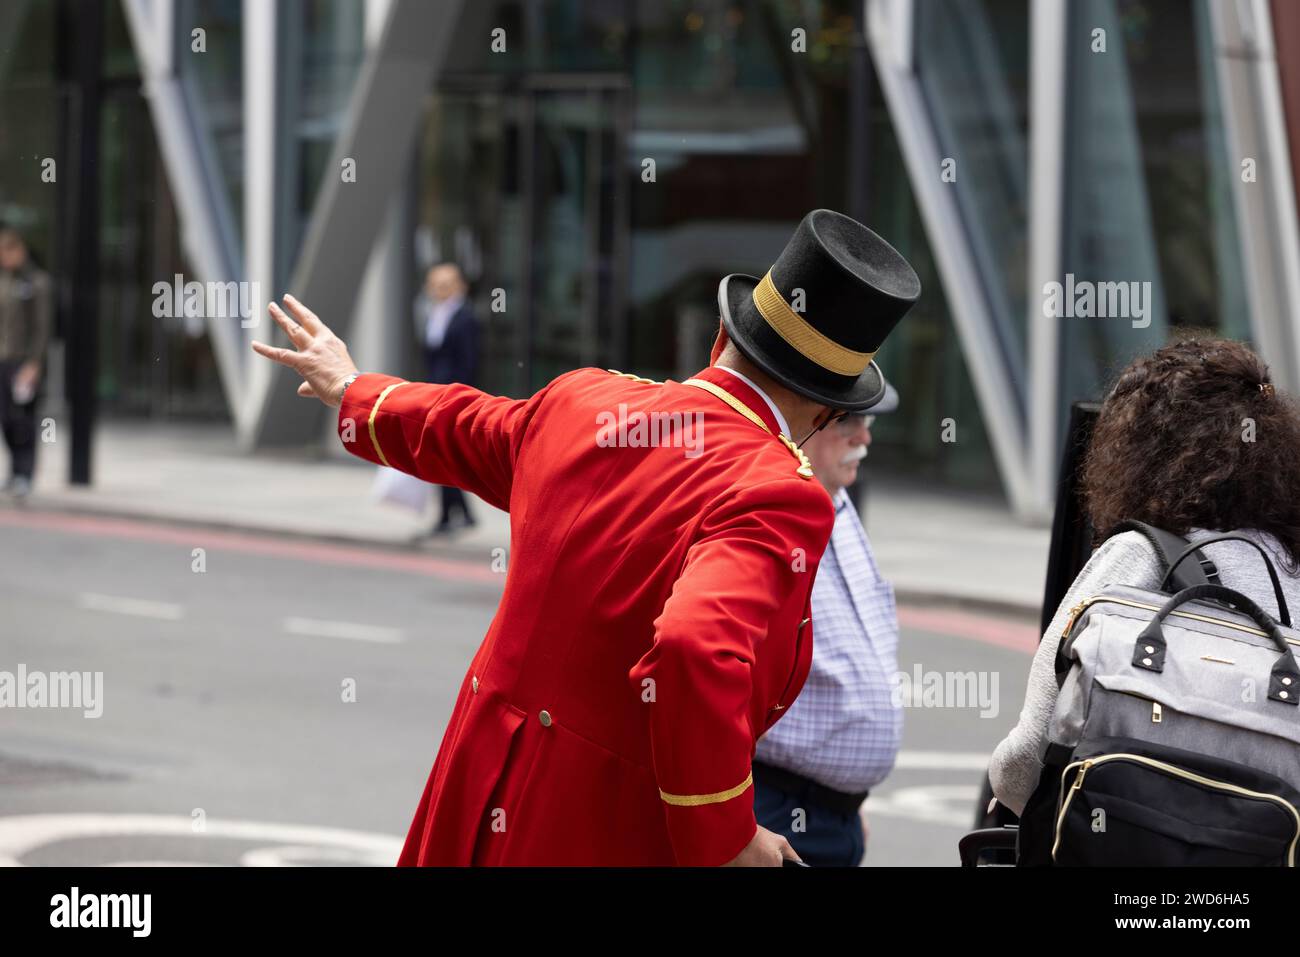 Un concierge vestito in elegante uniforme rossa tradizionale all'esterno del Rubens Hotel a Victoria, nel centro di Londra. Sta aiutando un passeggero a salire su un taxi nero Foto Stock